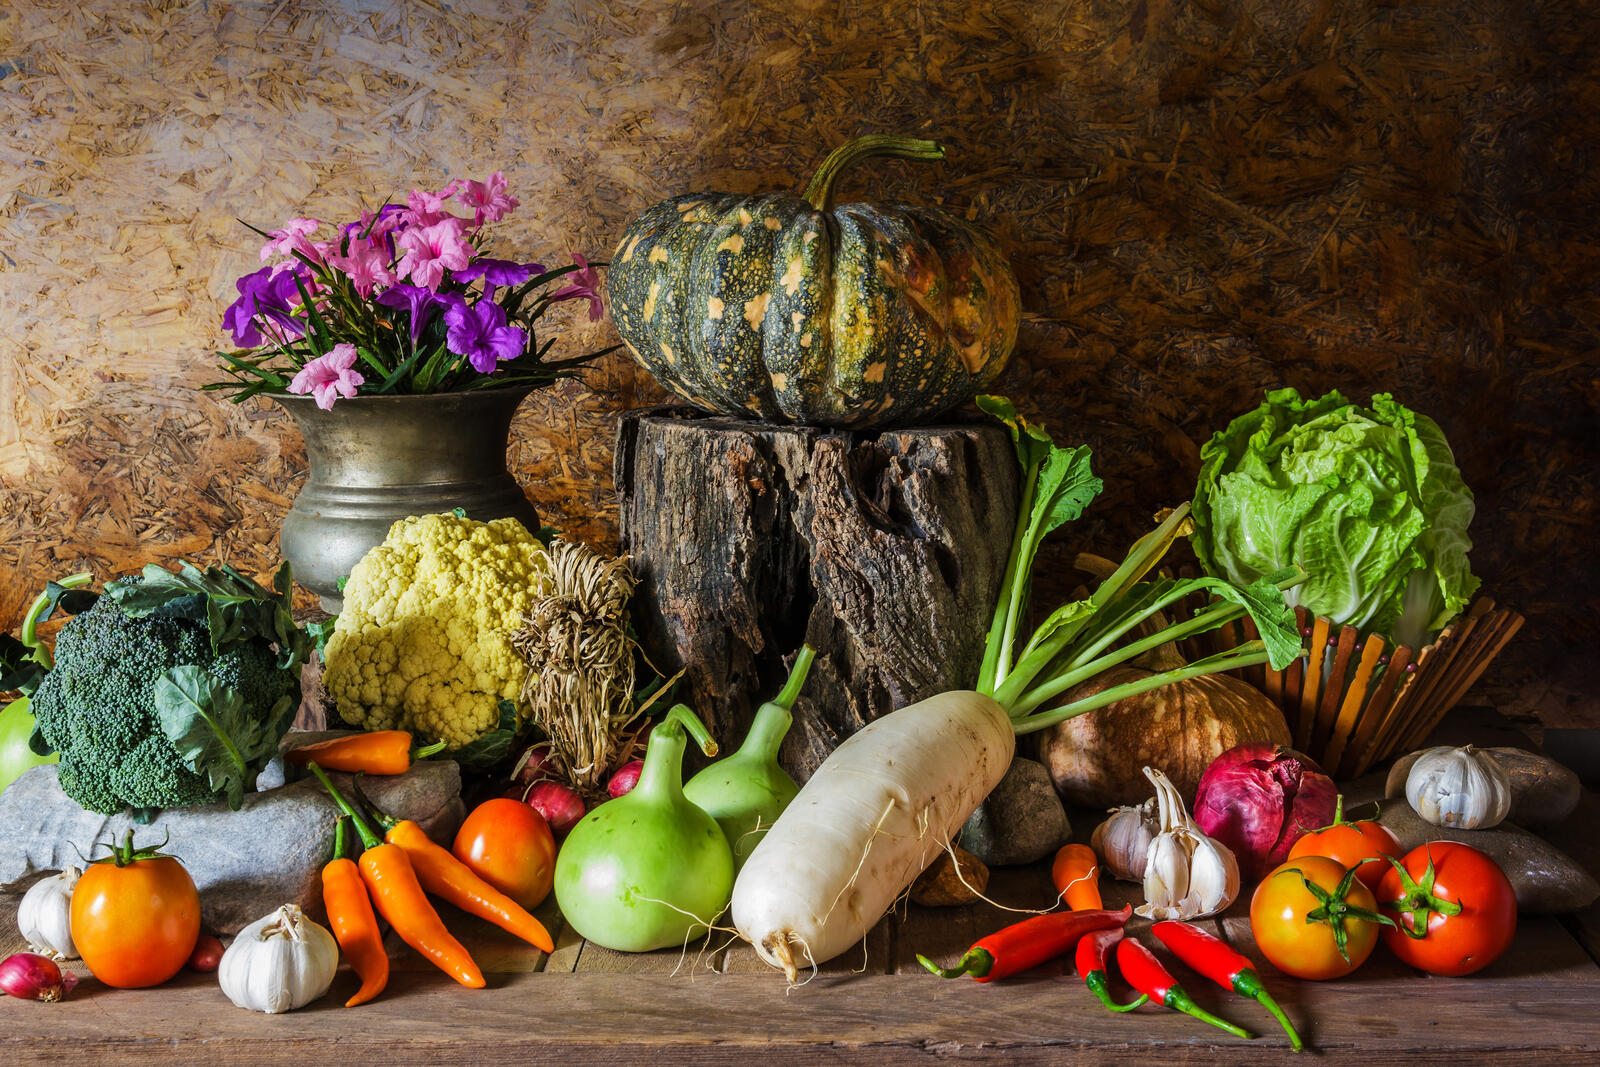 Бесплатное фото Букет и осенние овощи